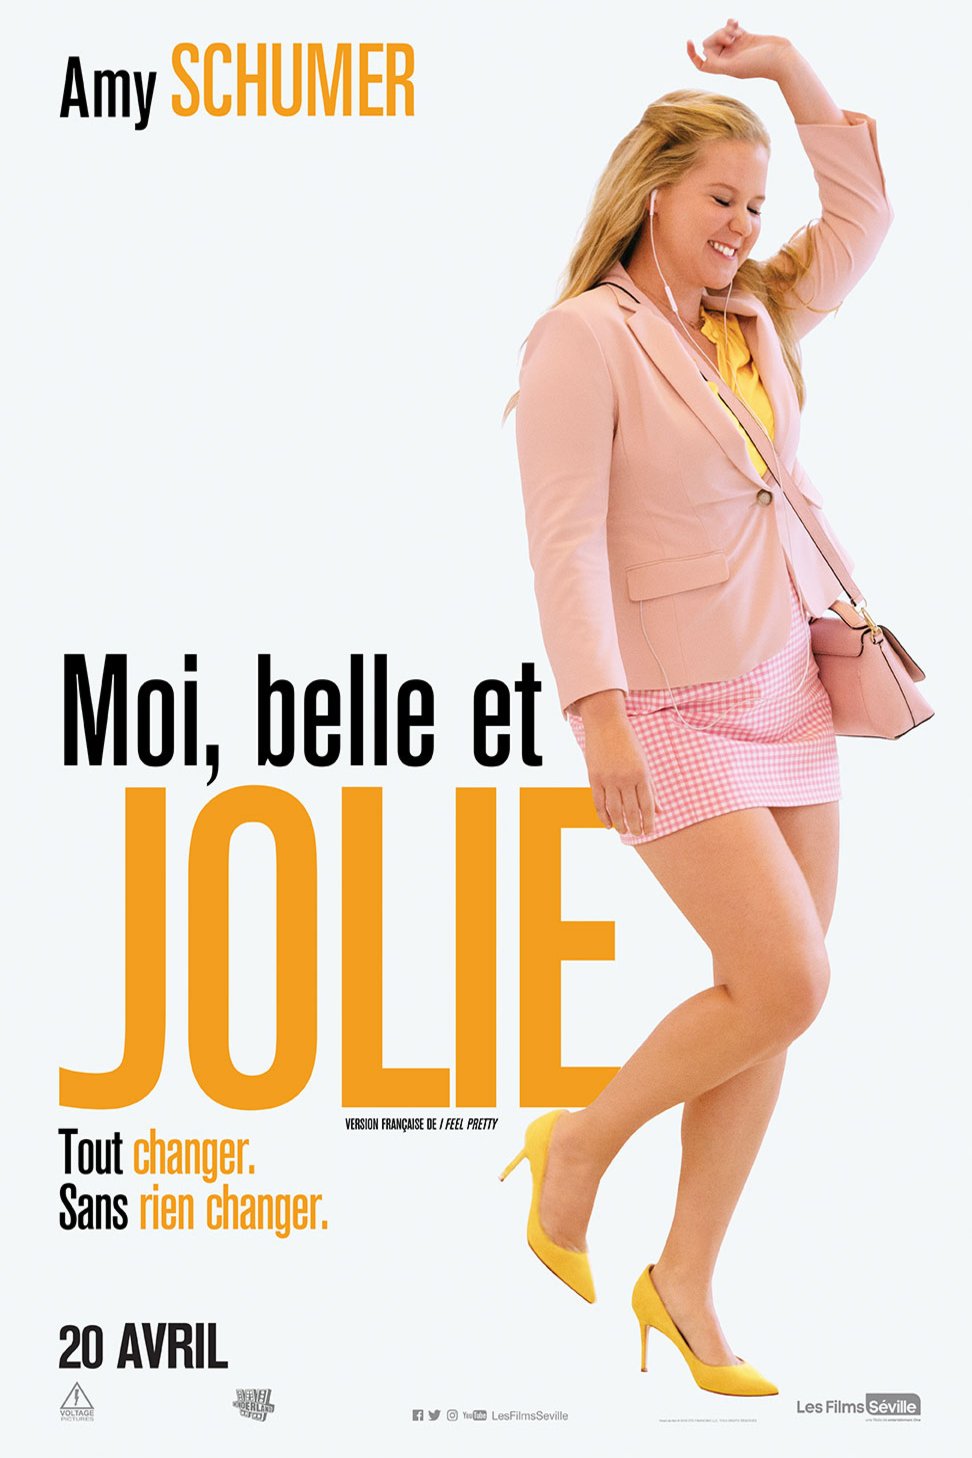 Poster of the movie Moi, belle et jolie